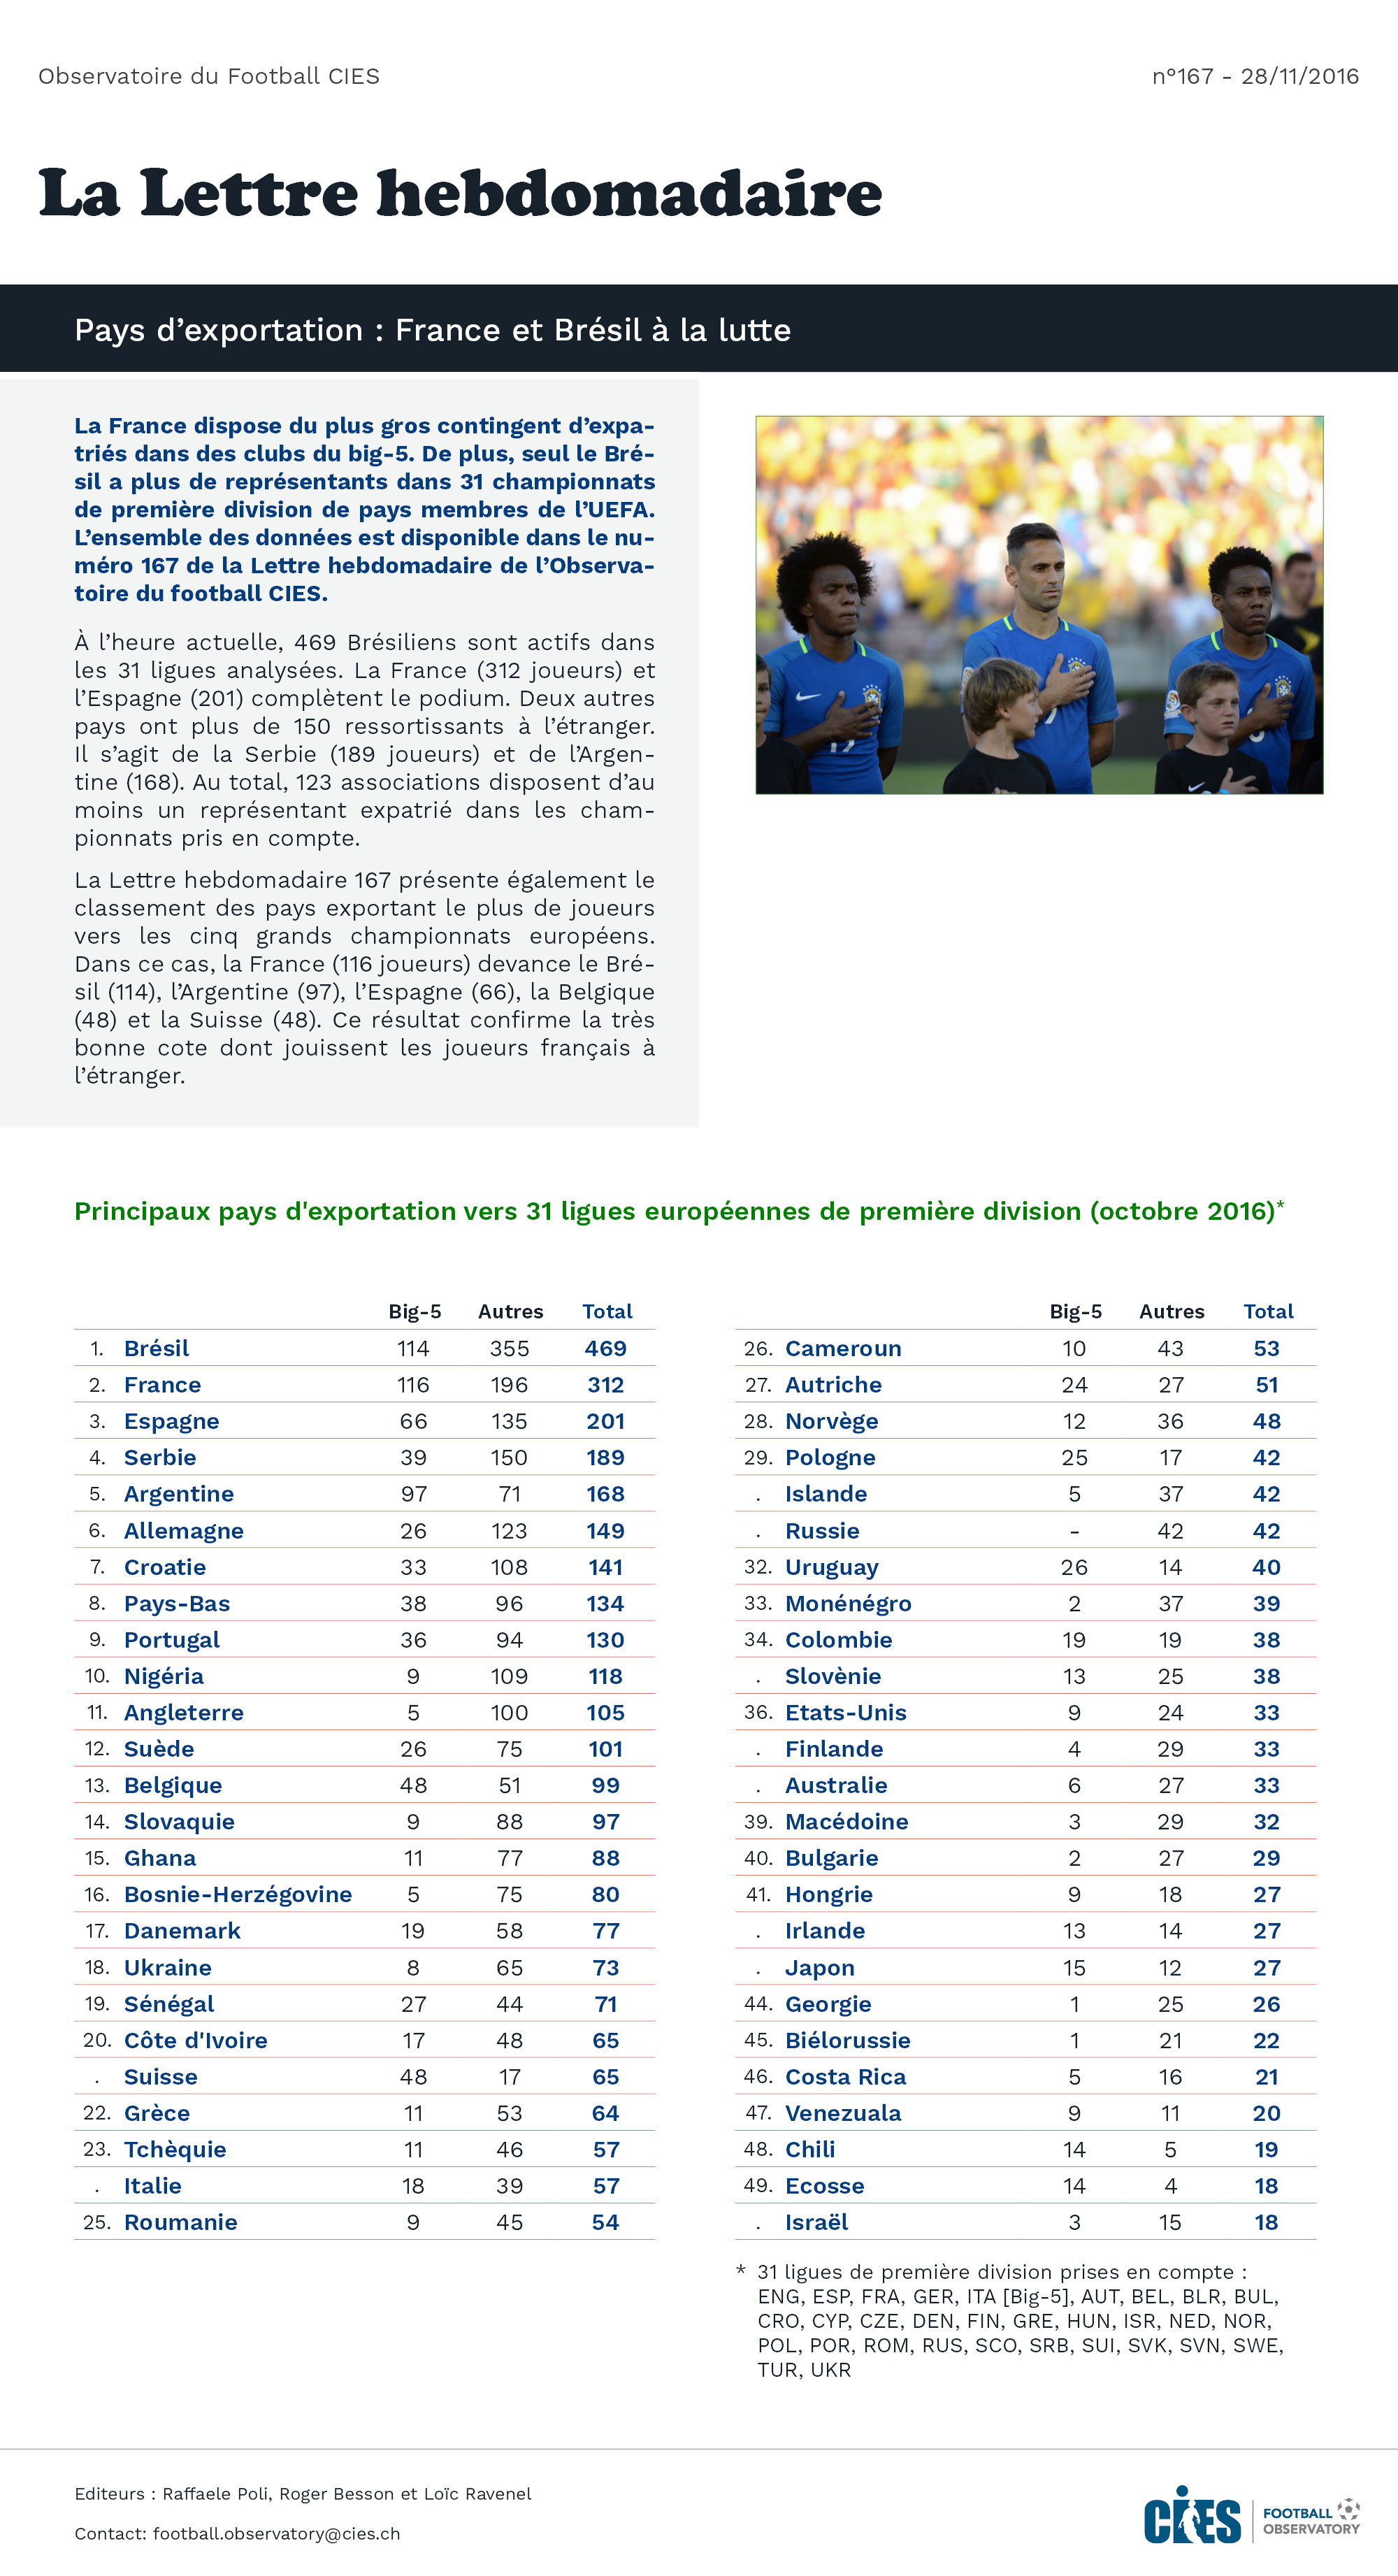 Classements: Principaux pays d'exportation vers 31 ligues européennes de première division (octobre 2016)